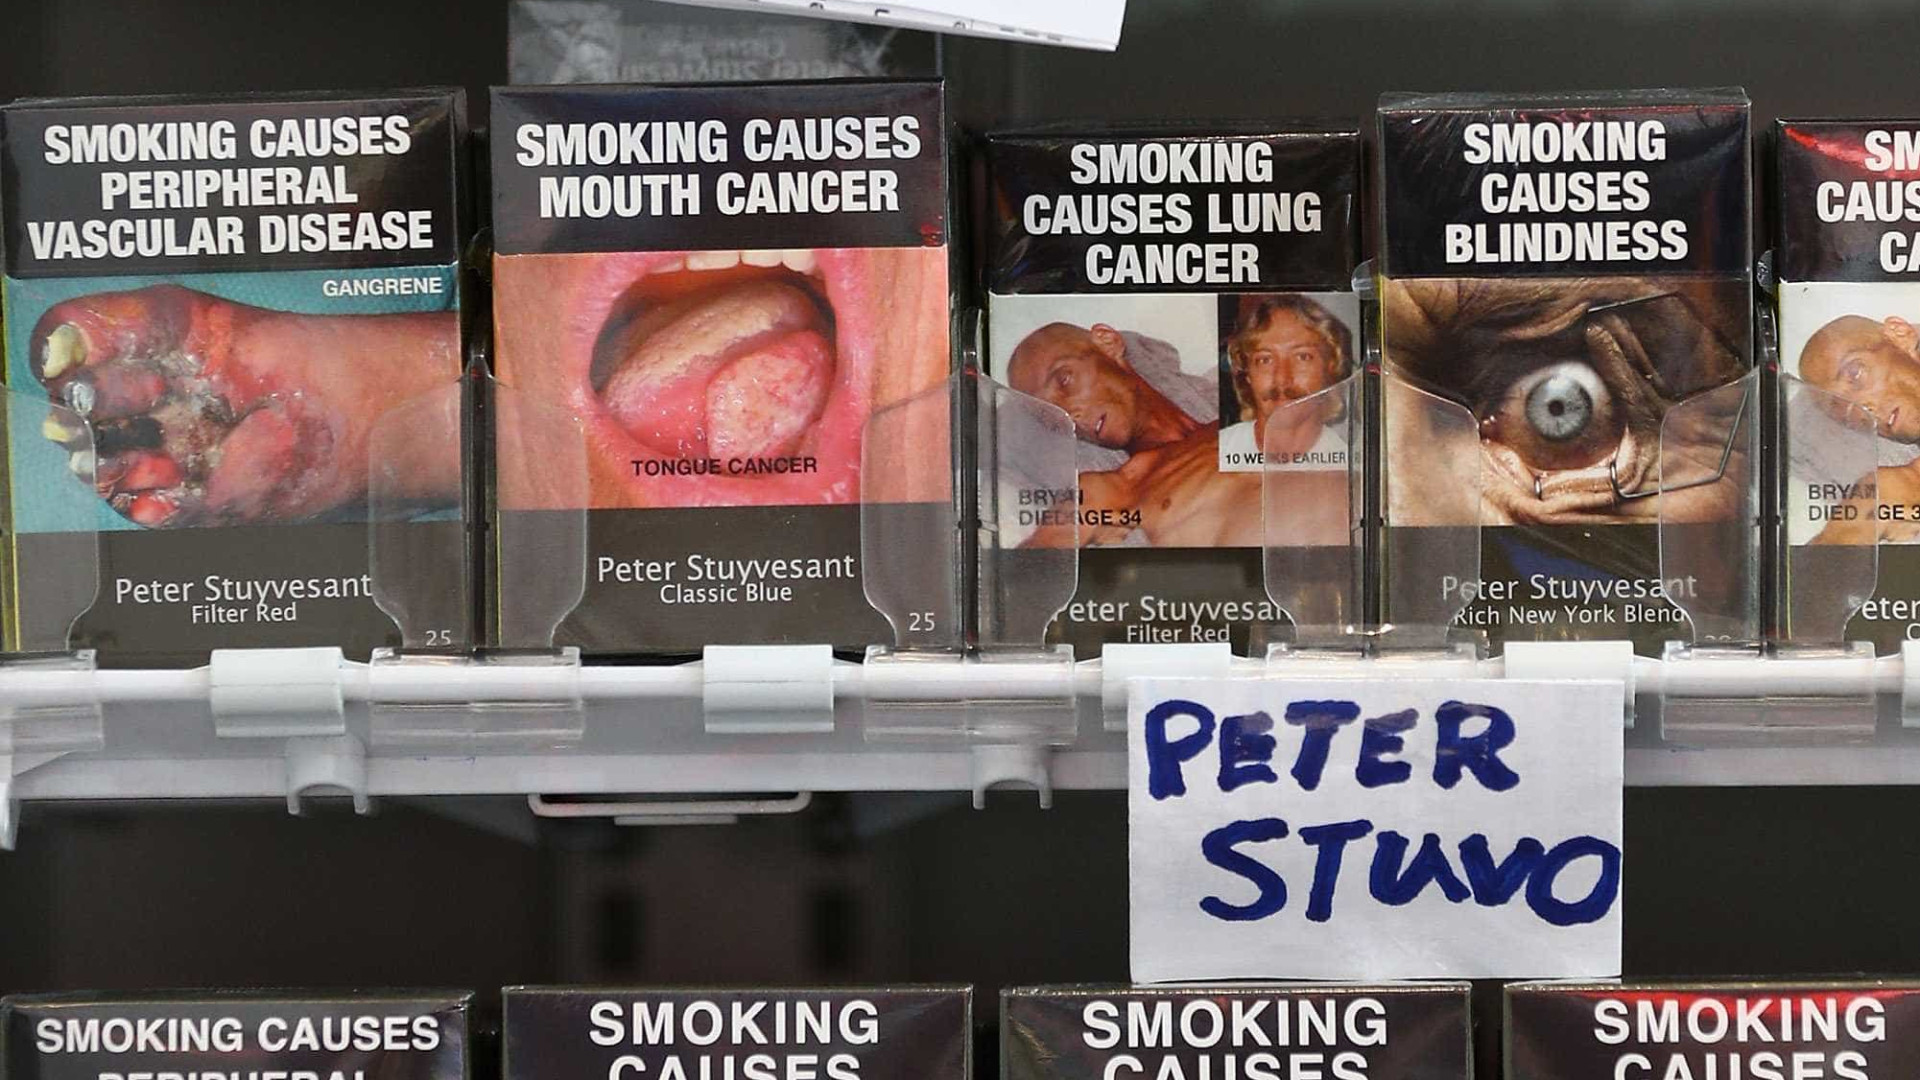 Ministro não quer adotar embalagem padrão de 
maços de cigarro no Brasil